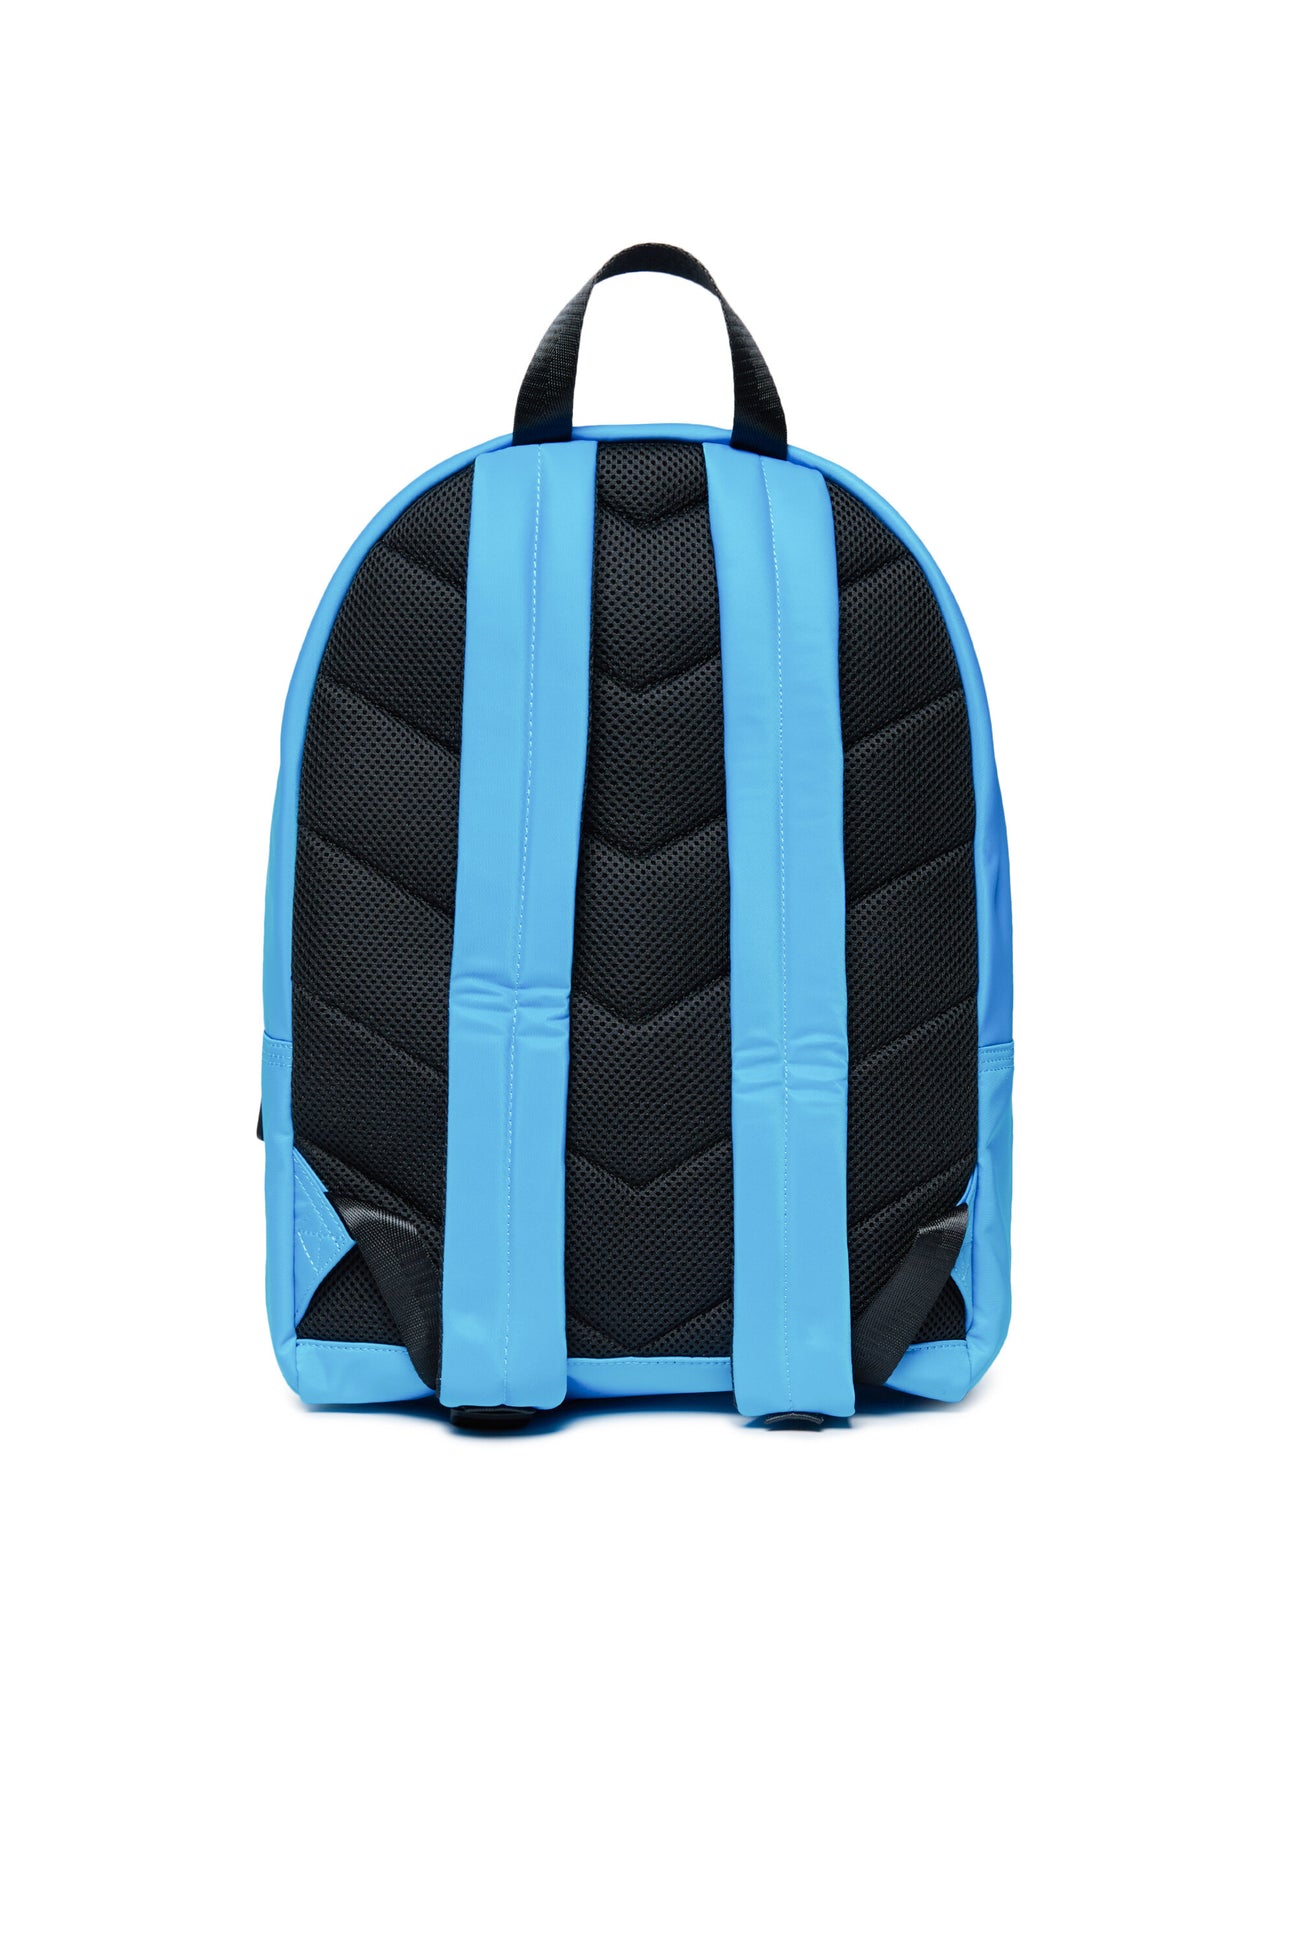 Oval D branded backpack Oval D branded backpack